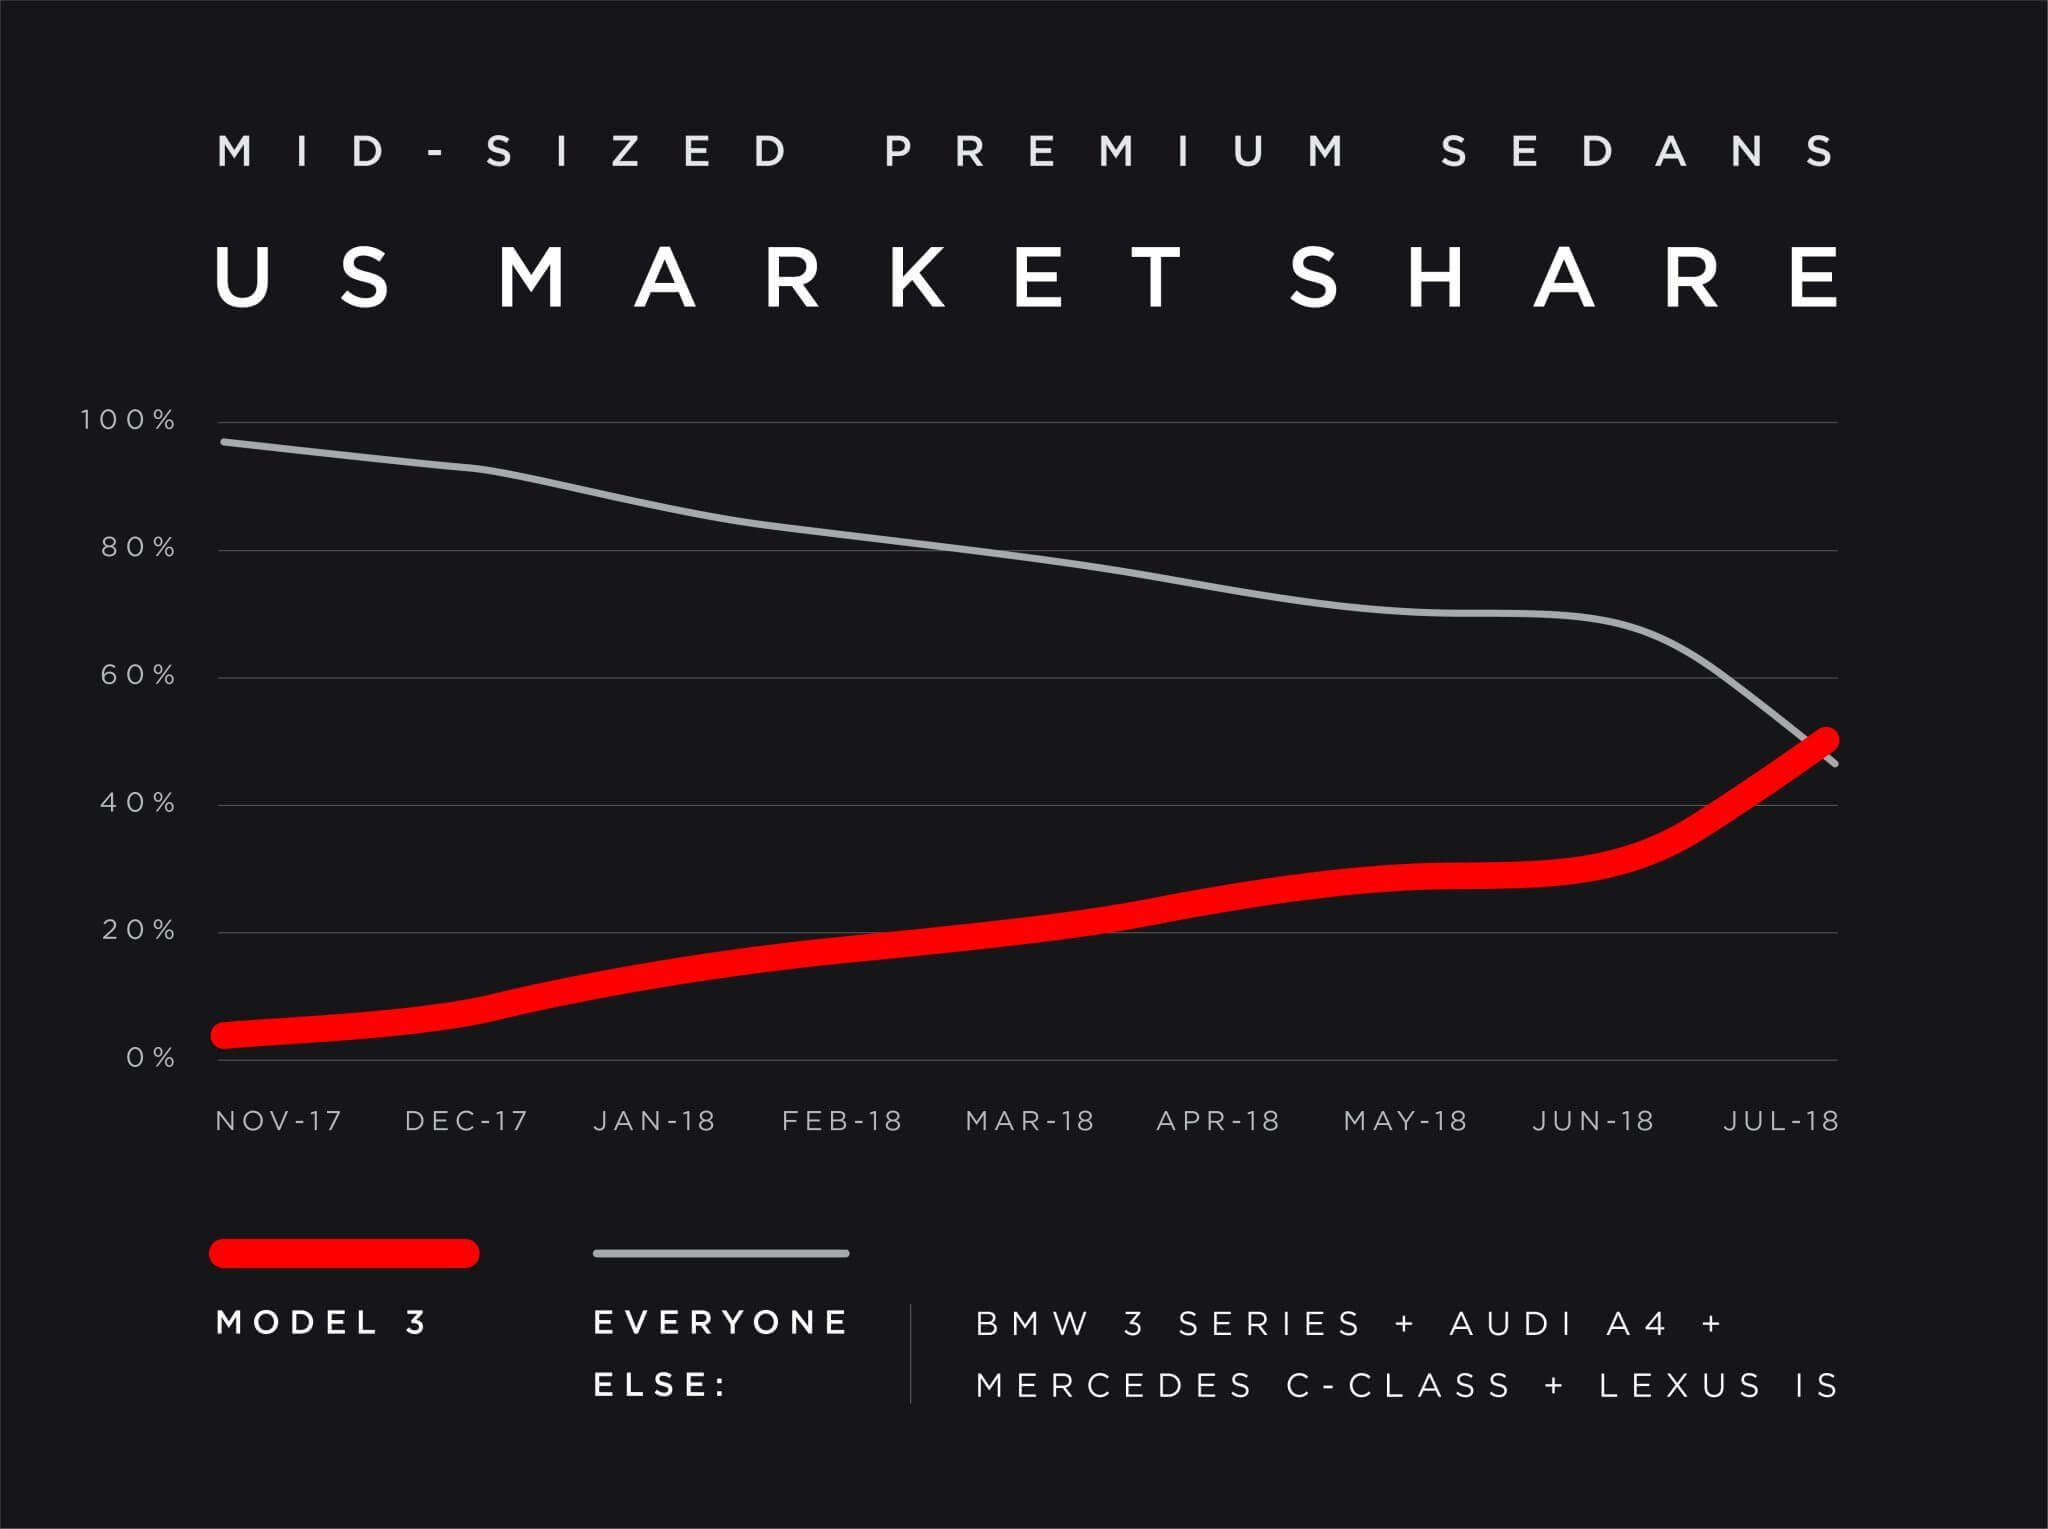 Сравнение продаж среднеразмерных премиум седанов и Tesla Model 3